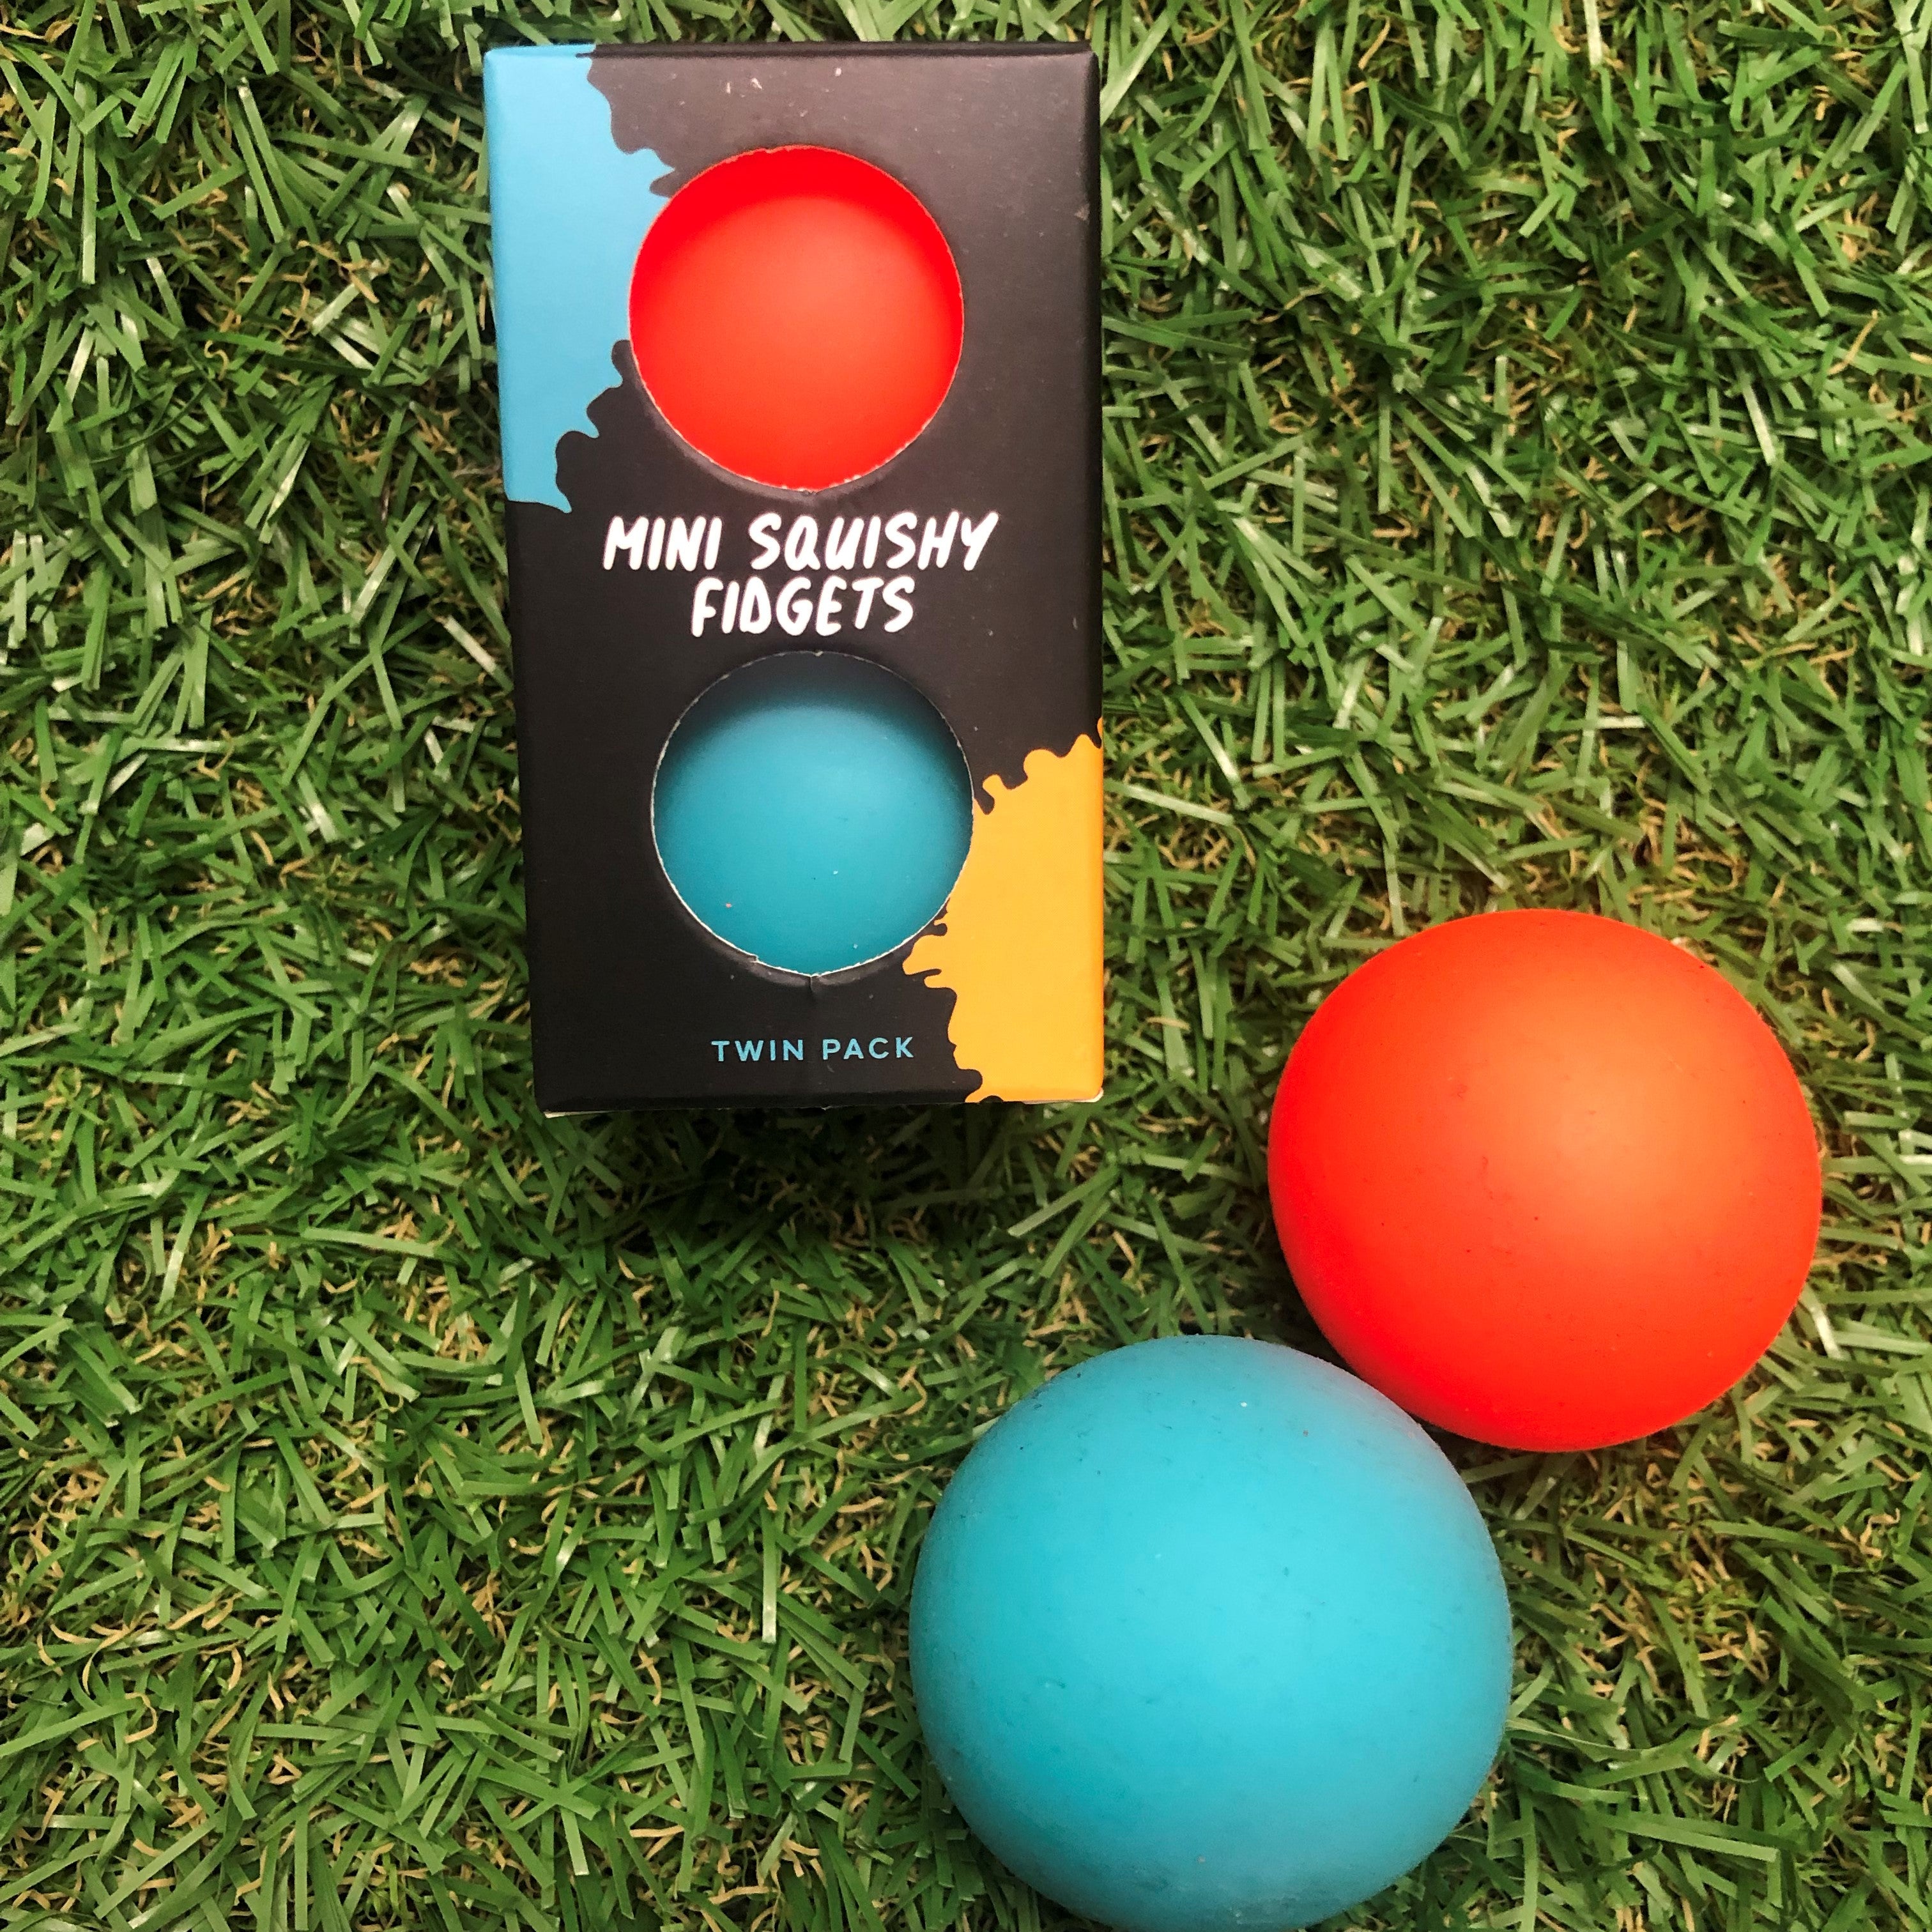 Mini Squishy Fidget Balls - Twin Pack